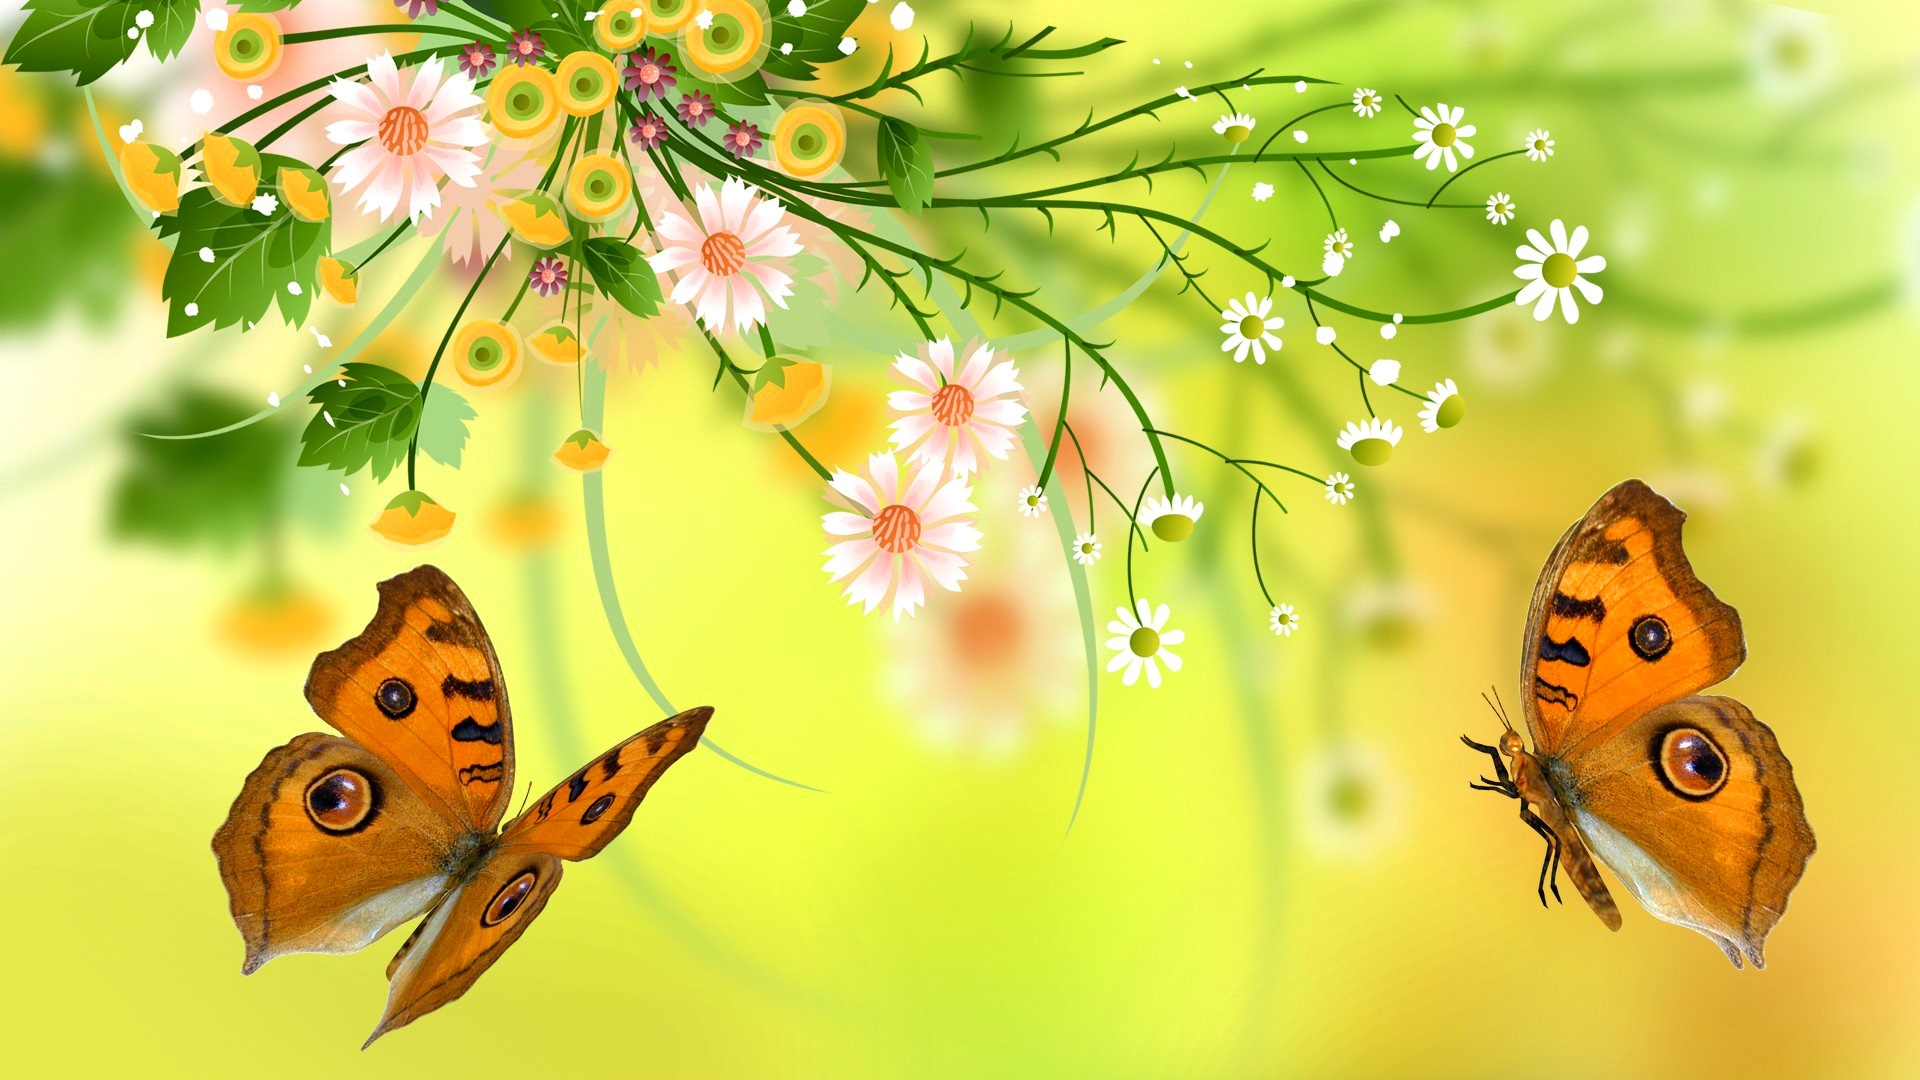 Hd Widescreen - Butterfly Design , HD Wallpaper & Backgrounds